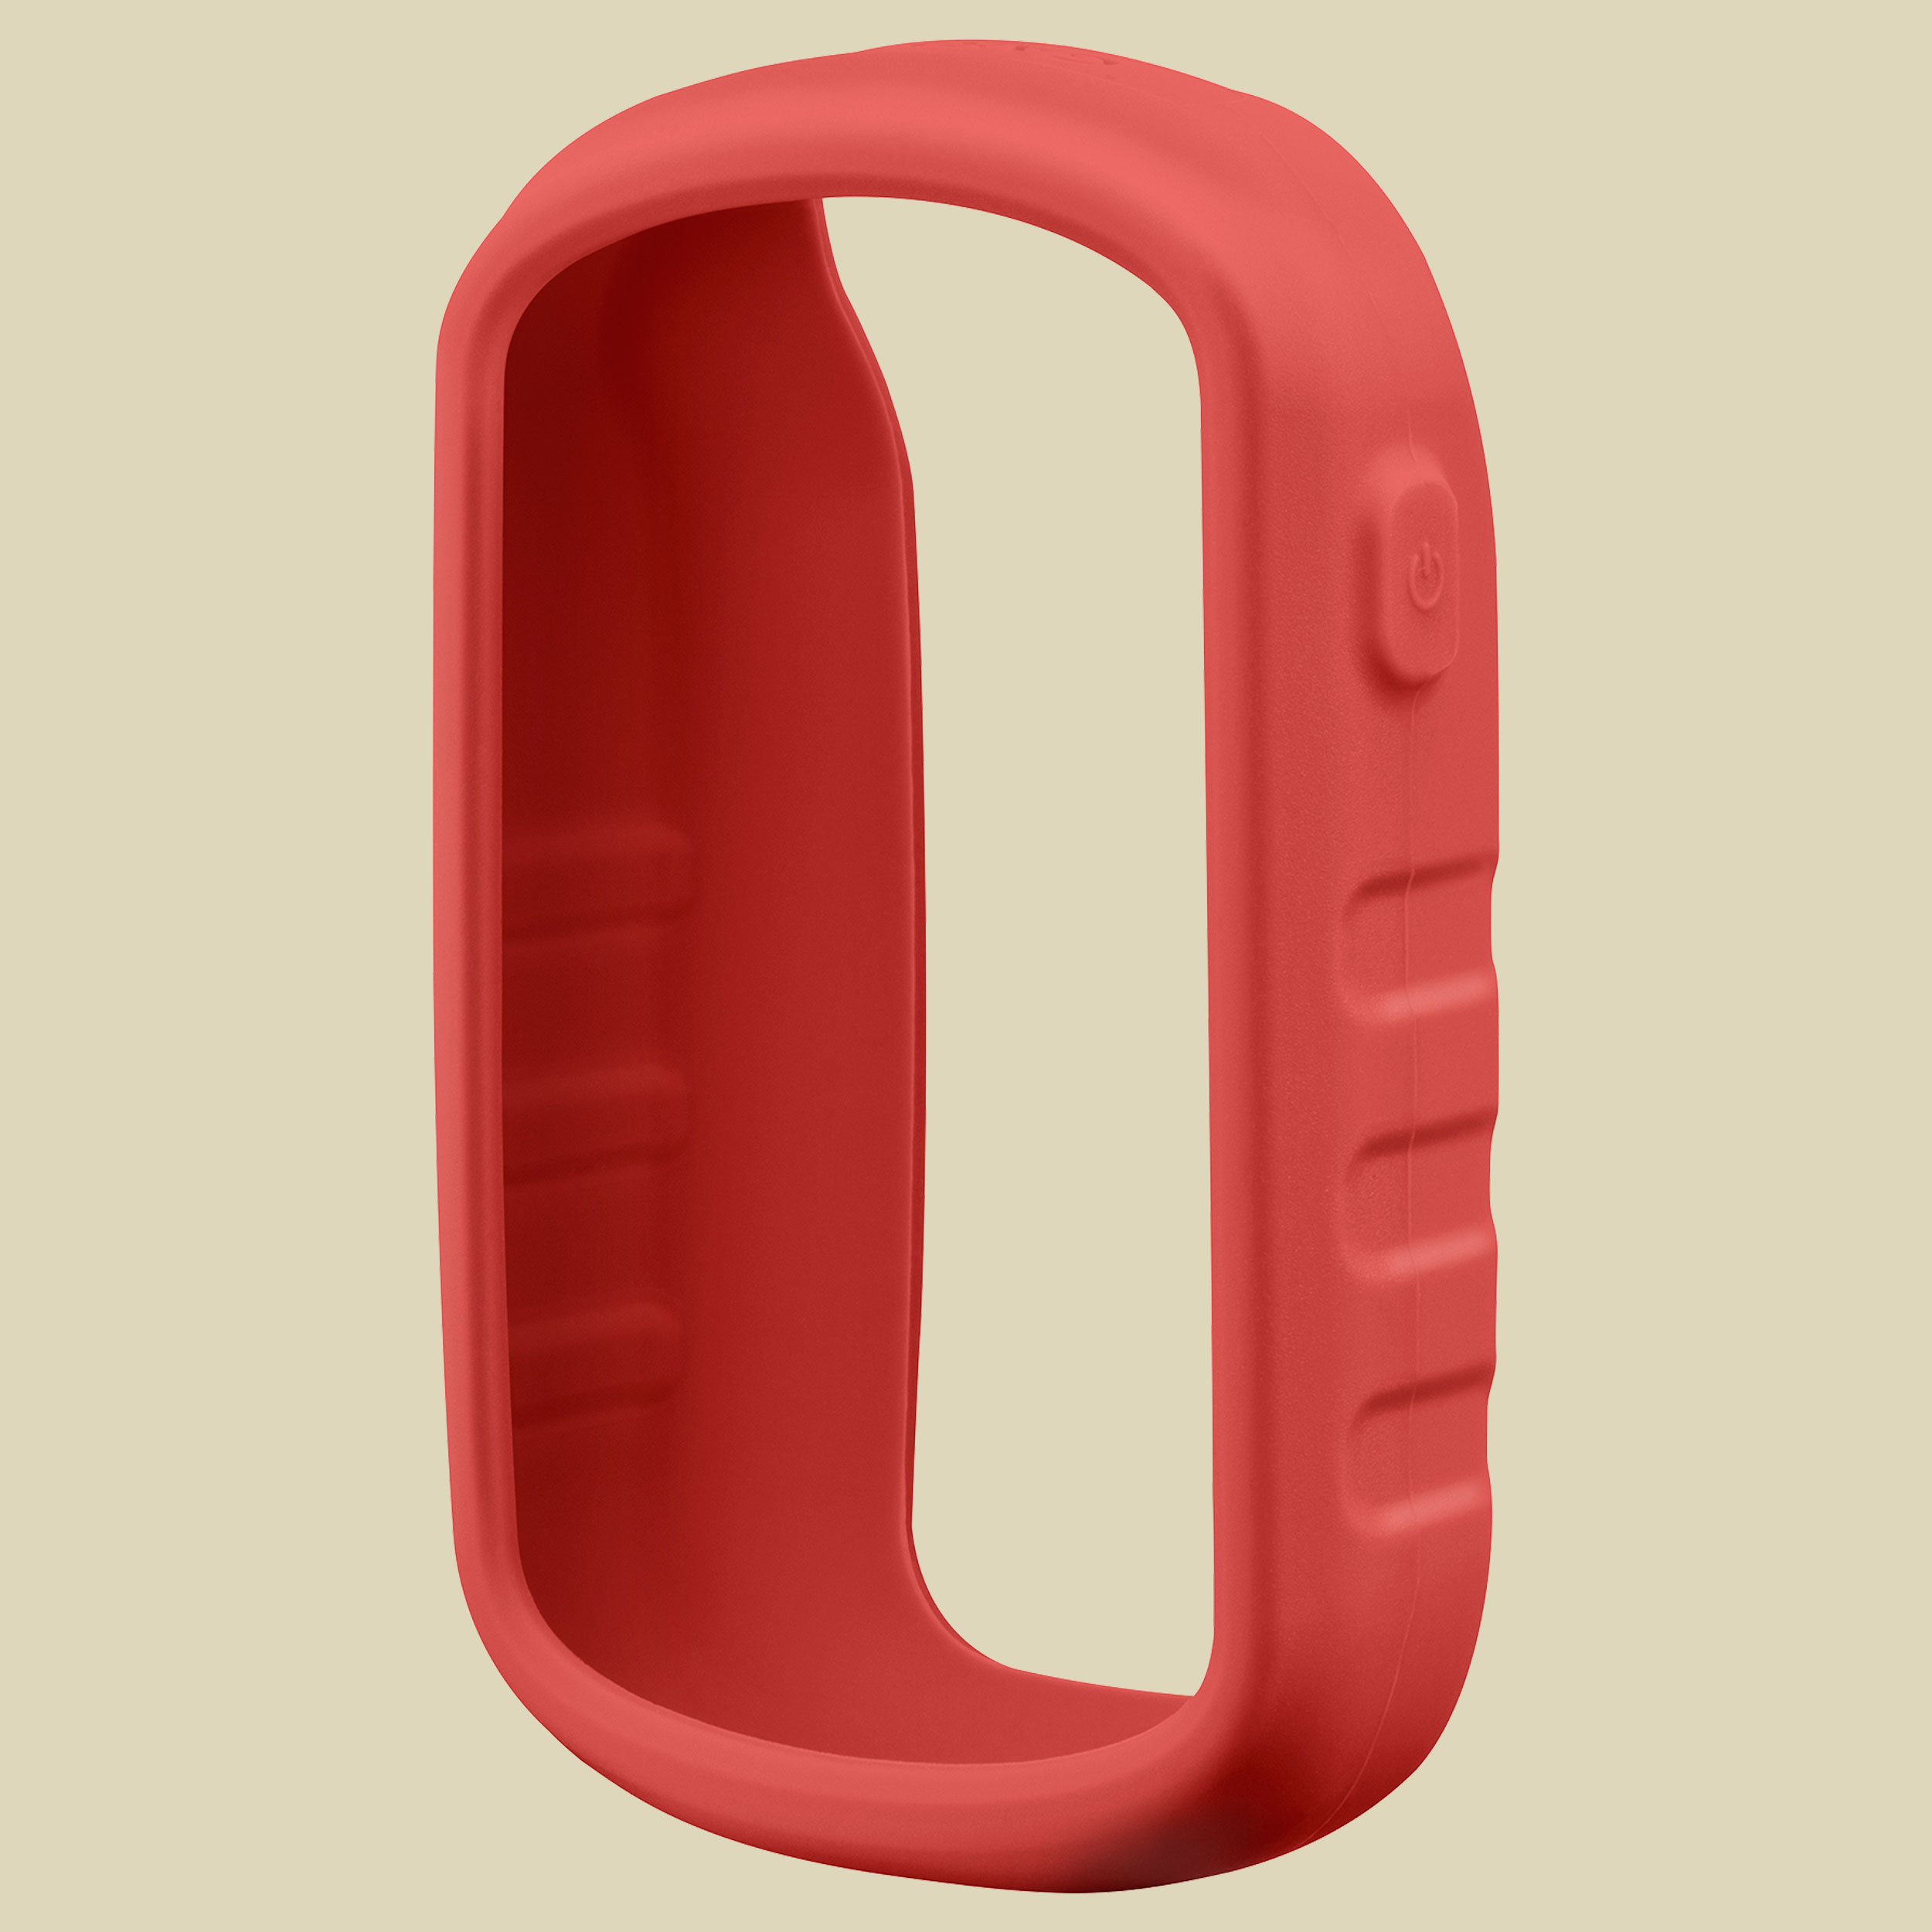 Silikonhülle für eTrex Touch Größe one size Farbe red